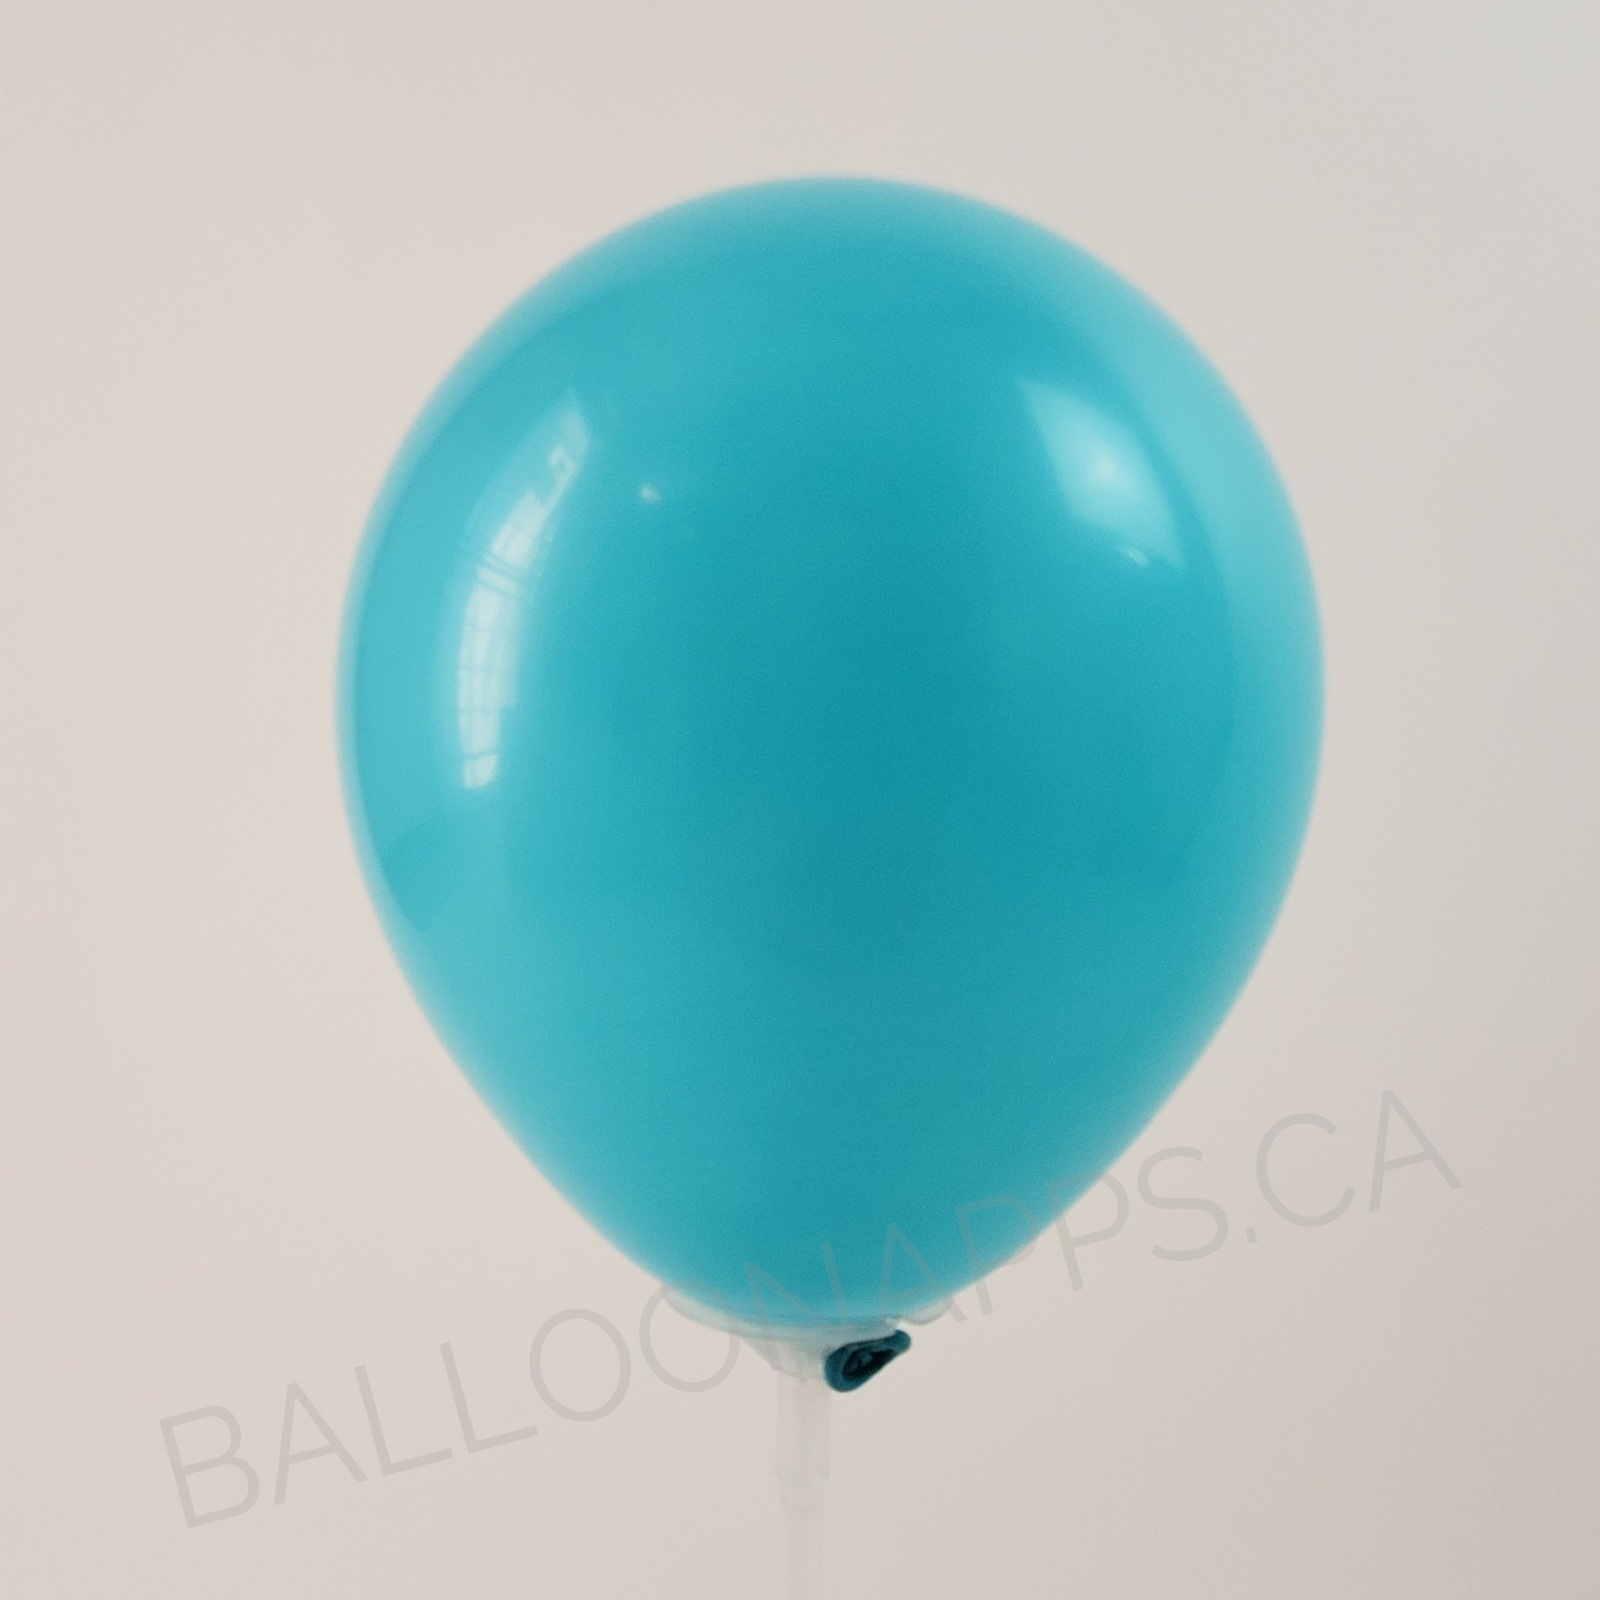 balloon texture Qualatex 260 Fashion Caribbean Blue